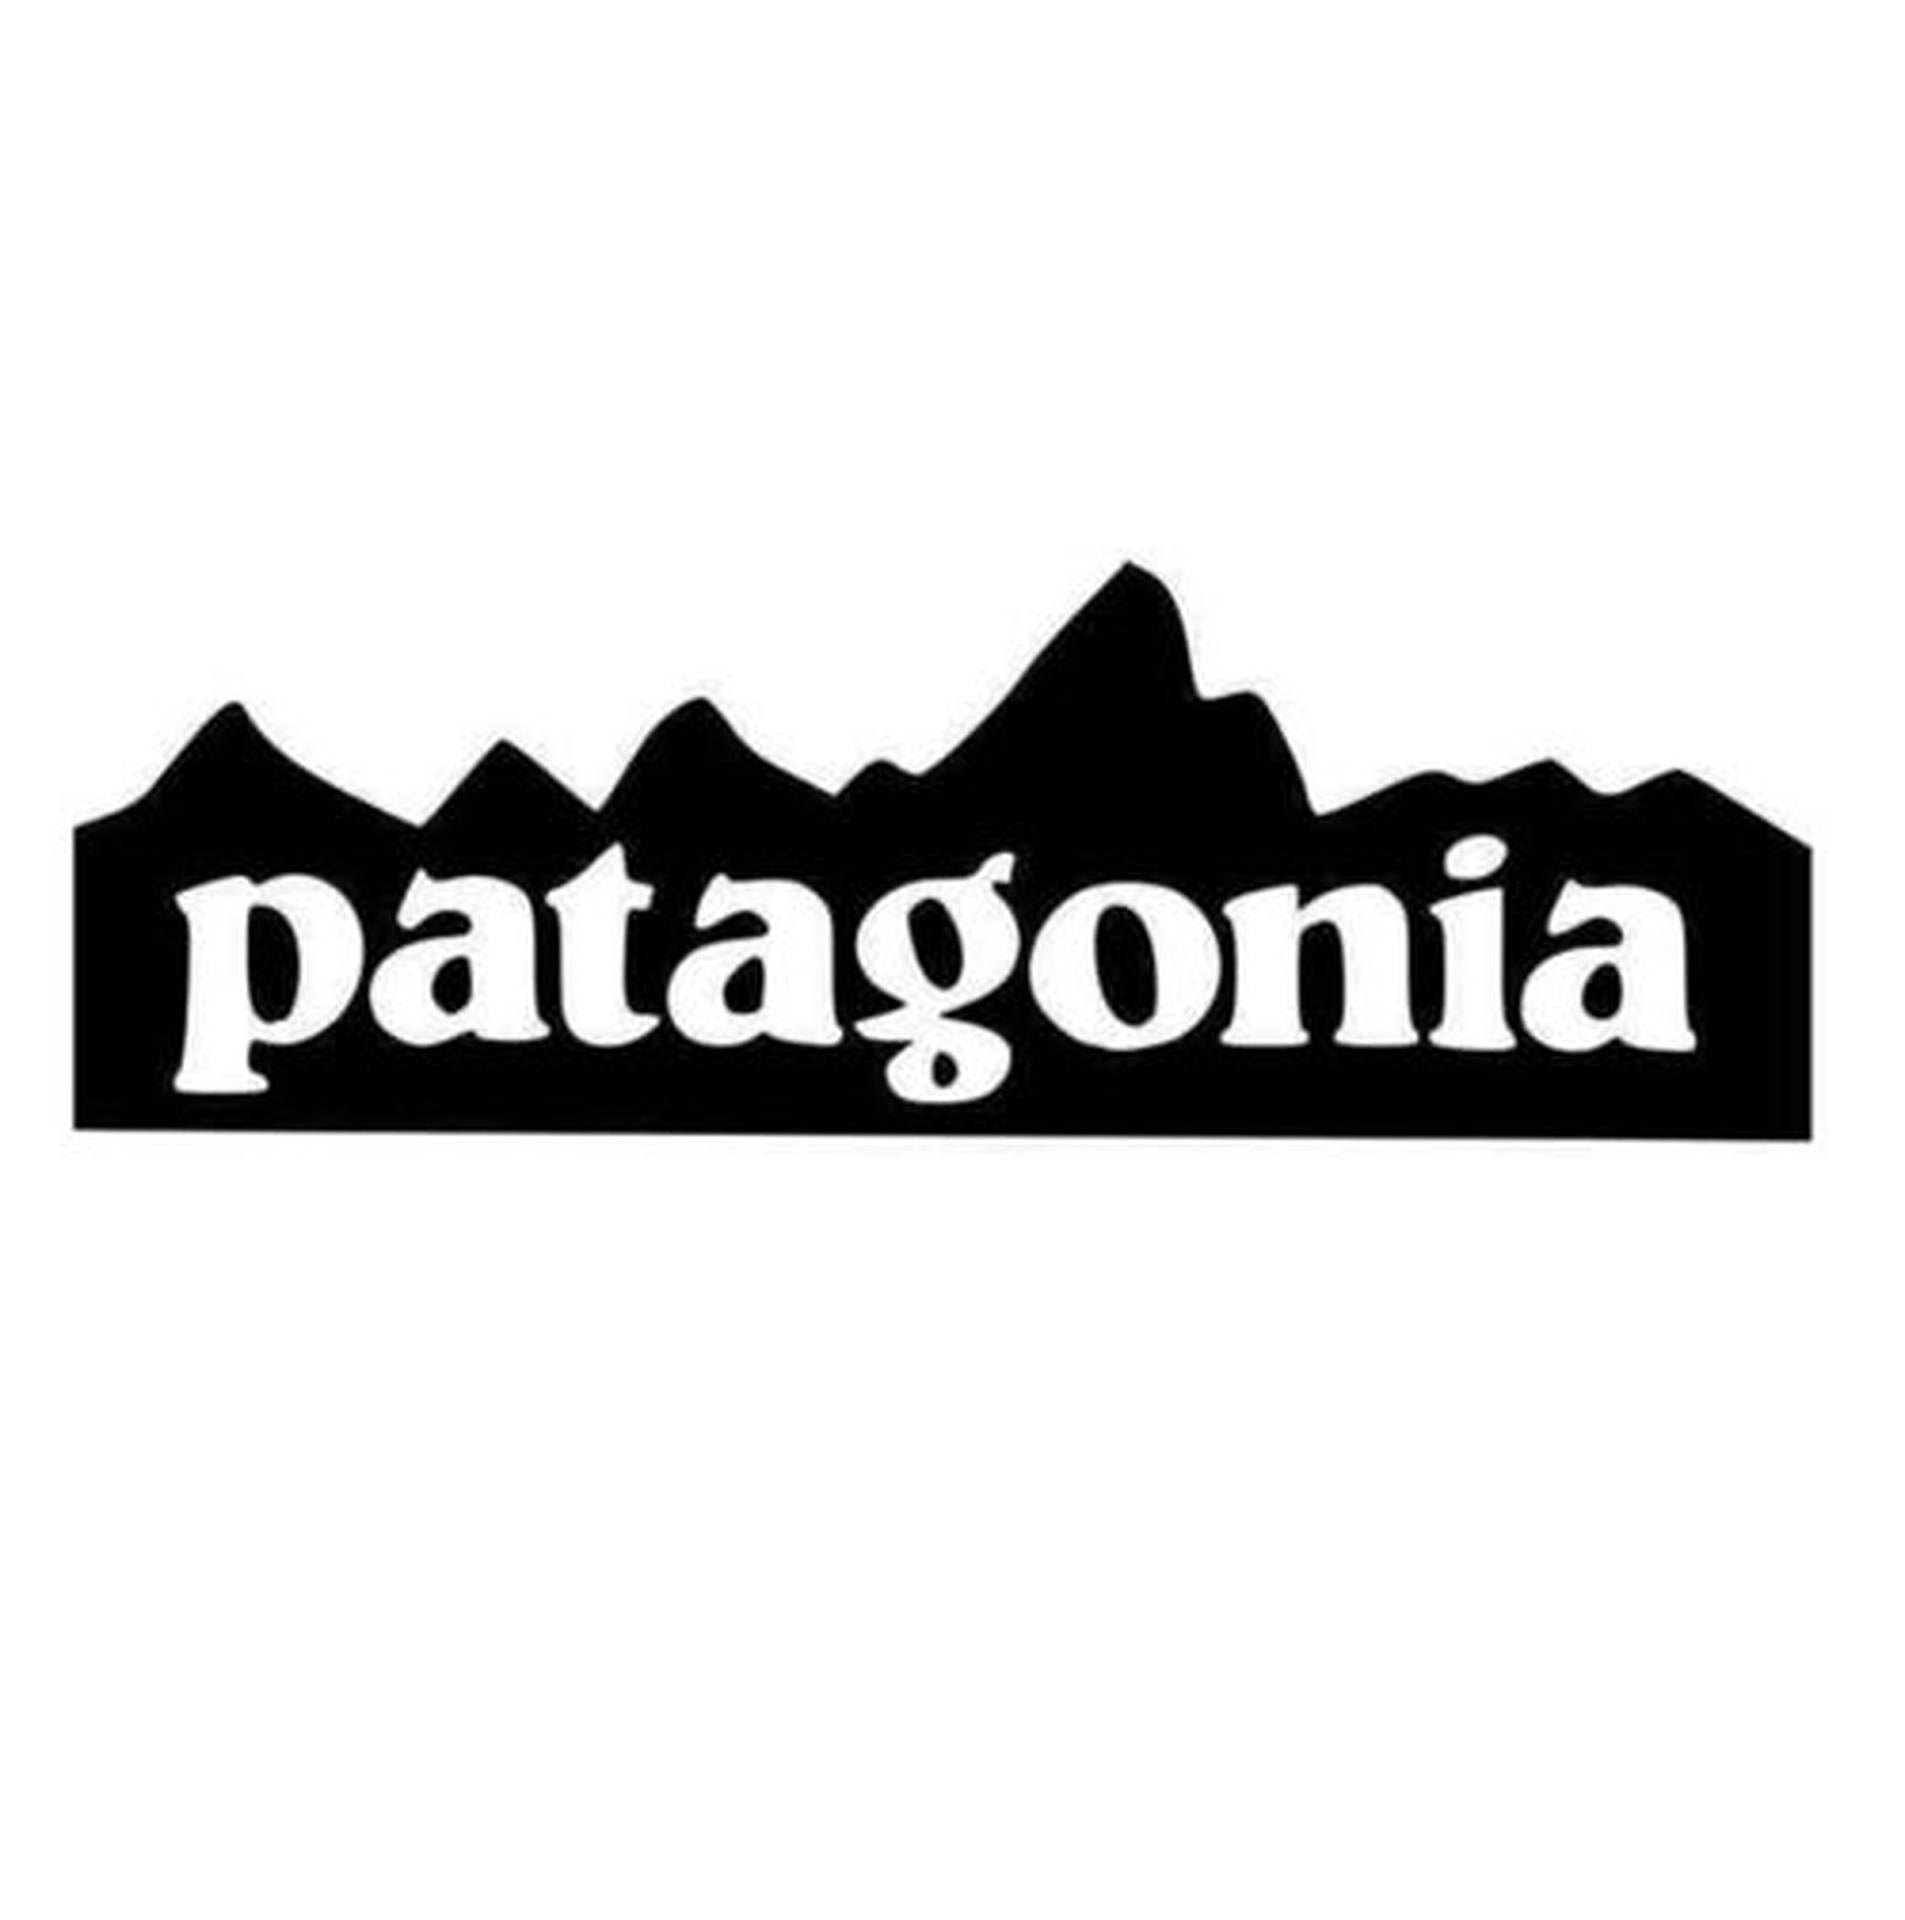 Patagonia Logotyp Wallpaper